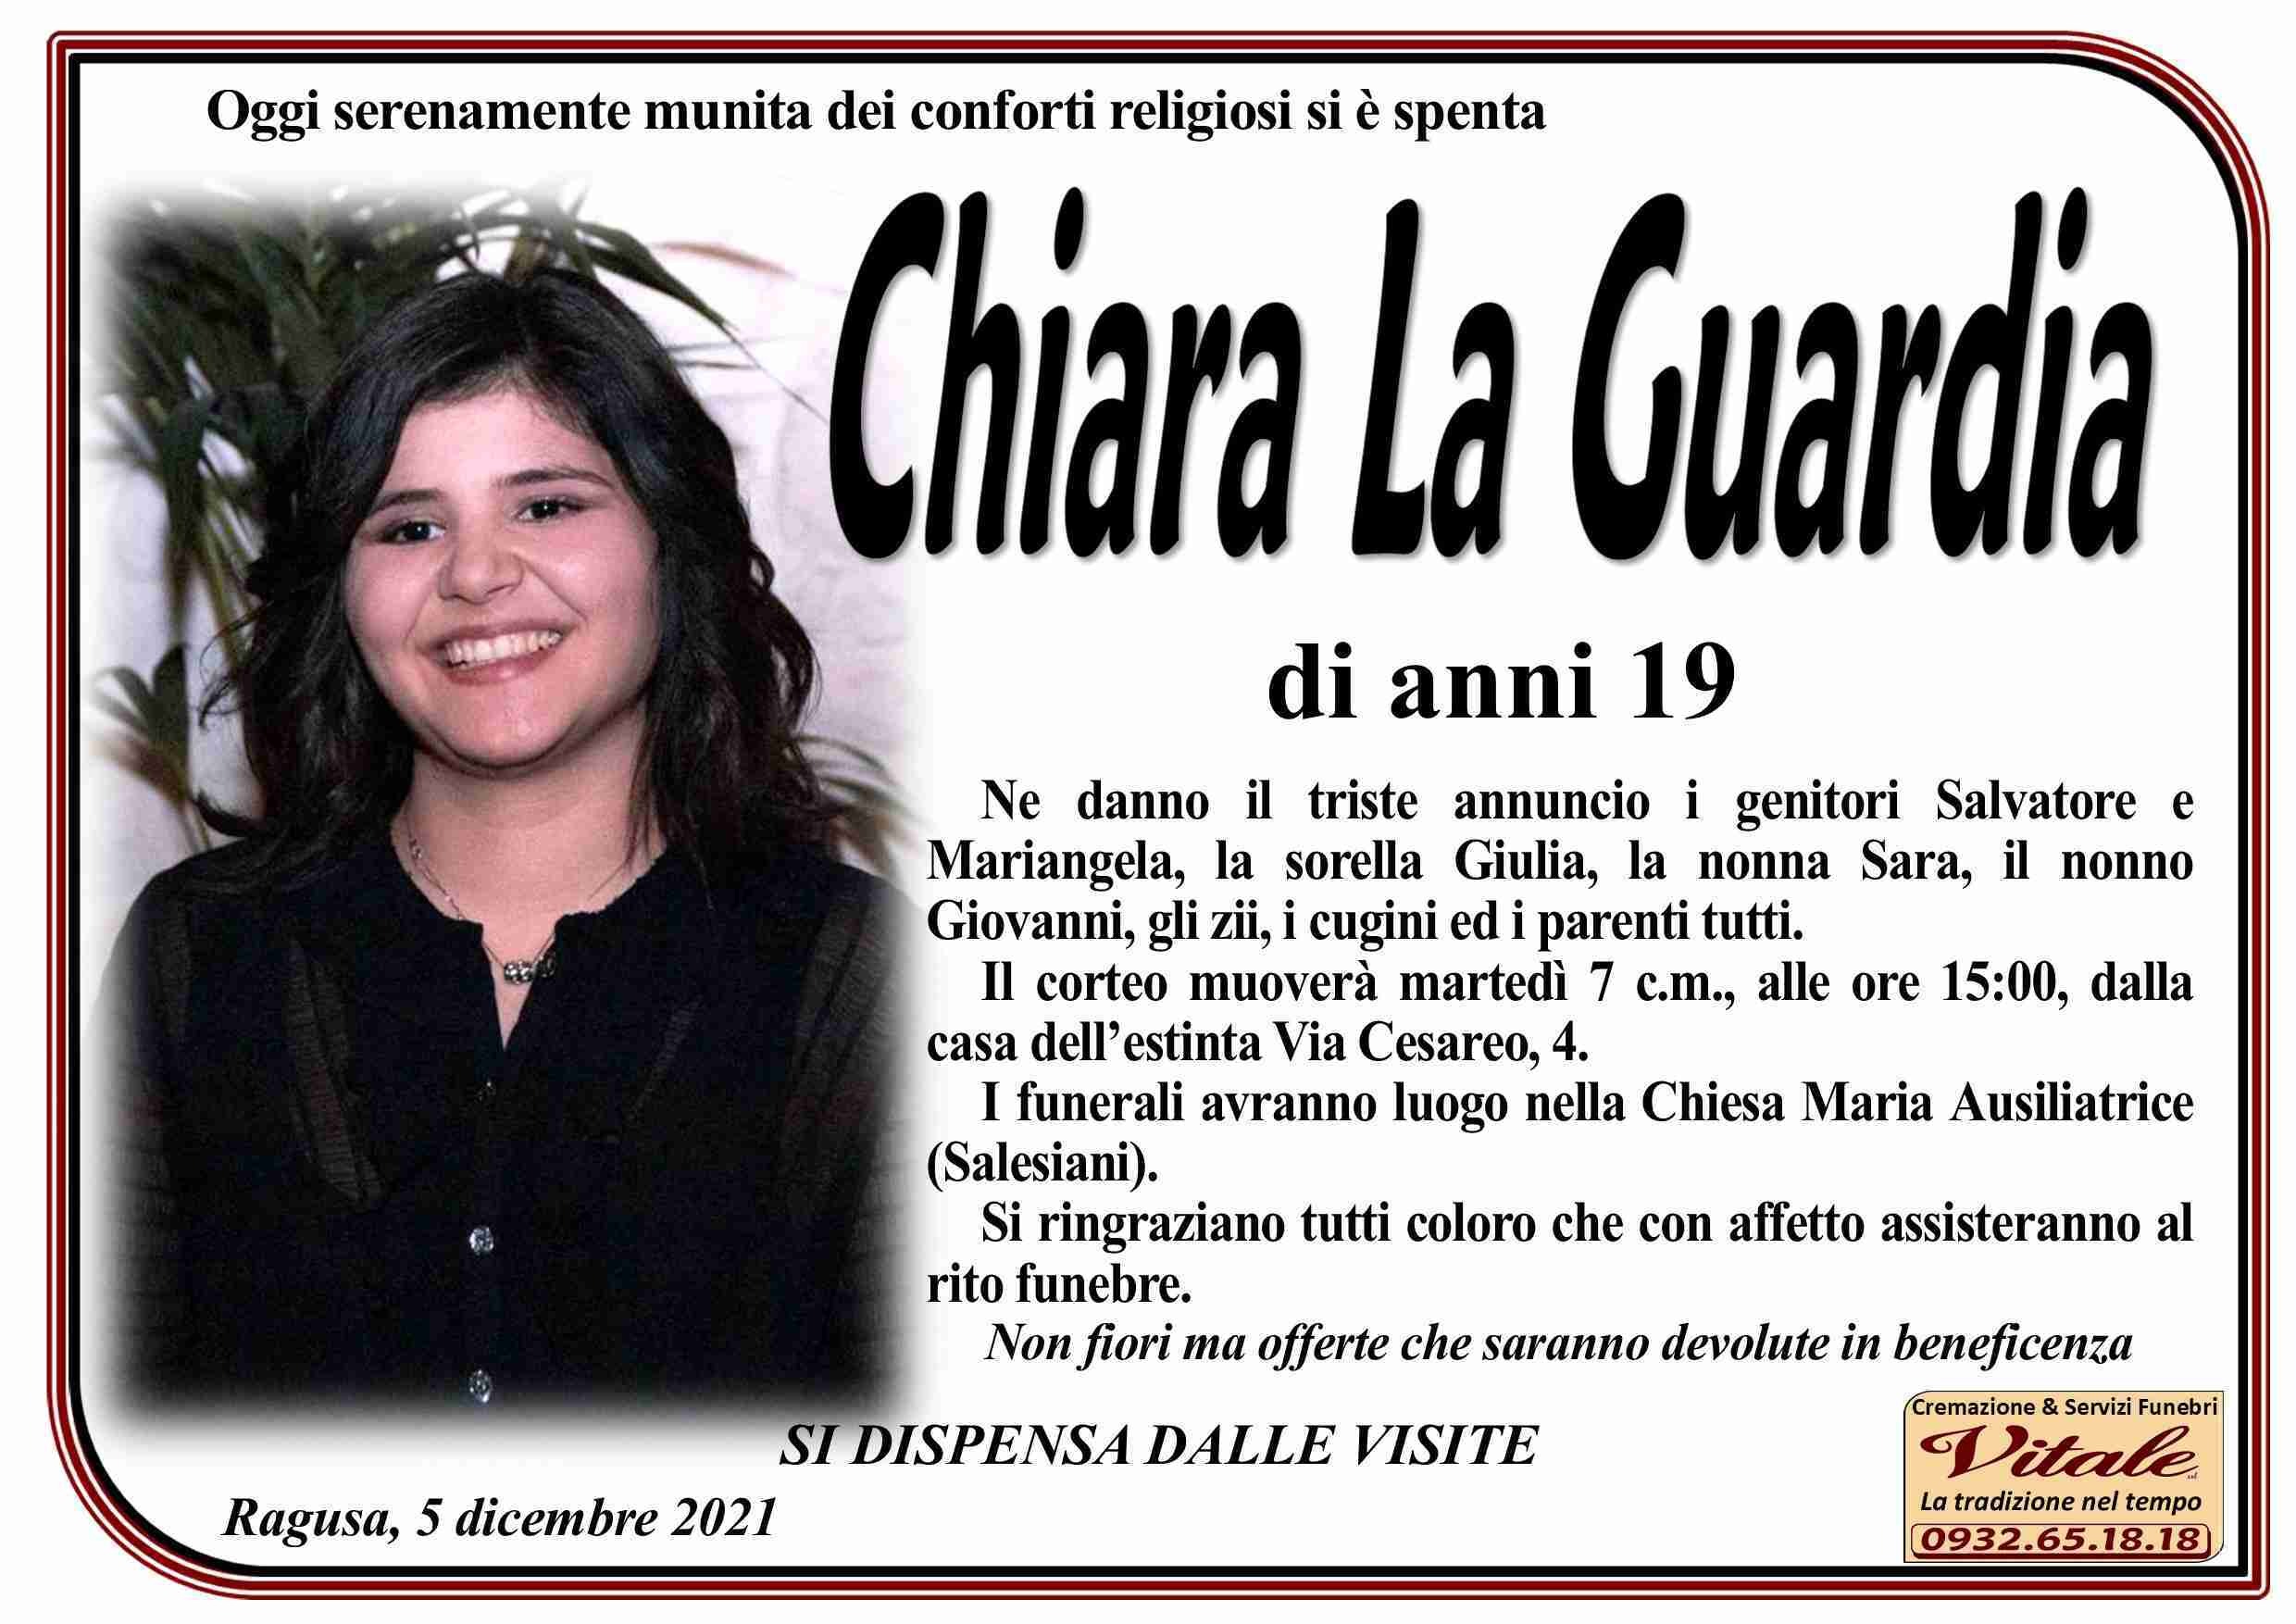 Chiara La Guardia